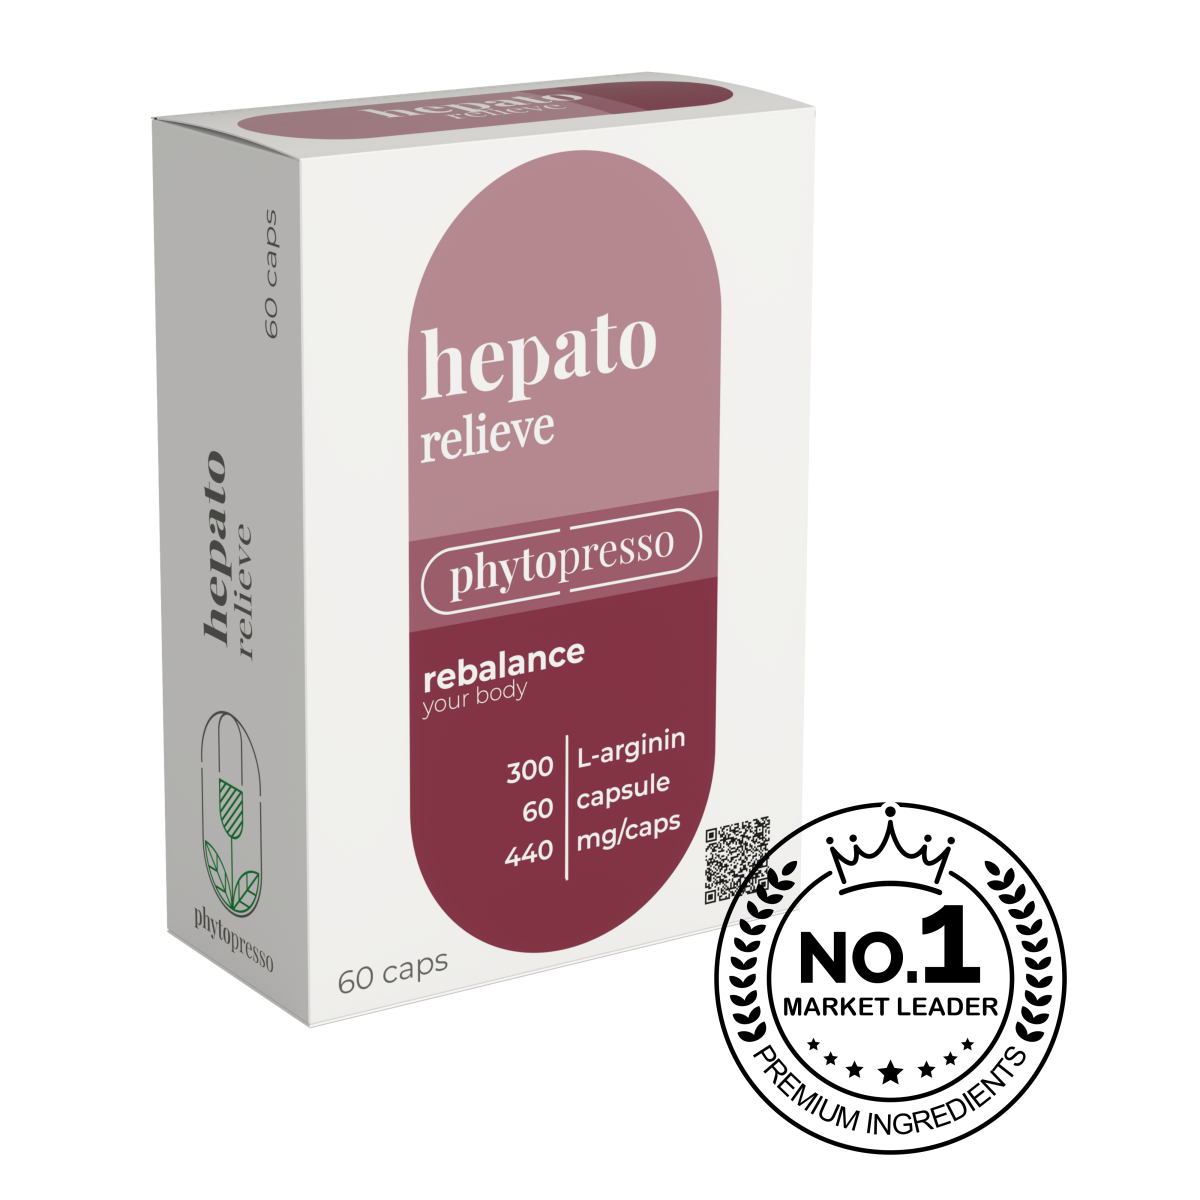 capsules hepato No1 square